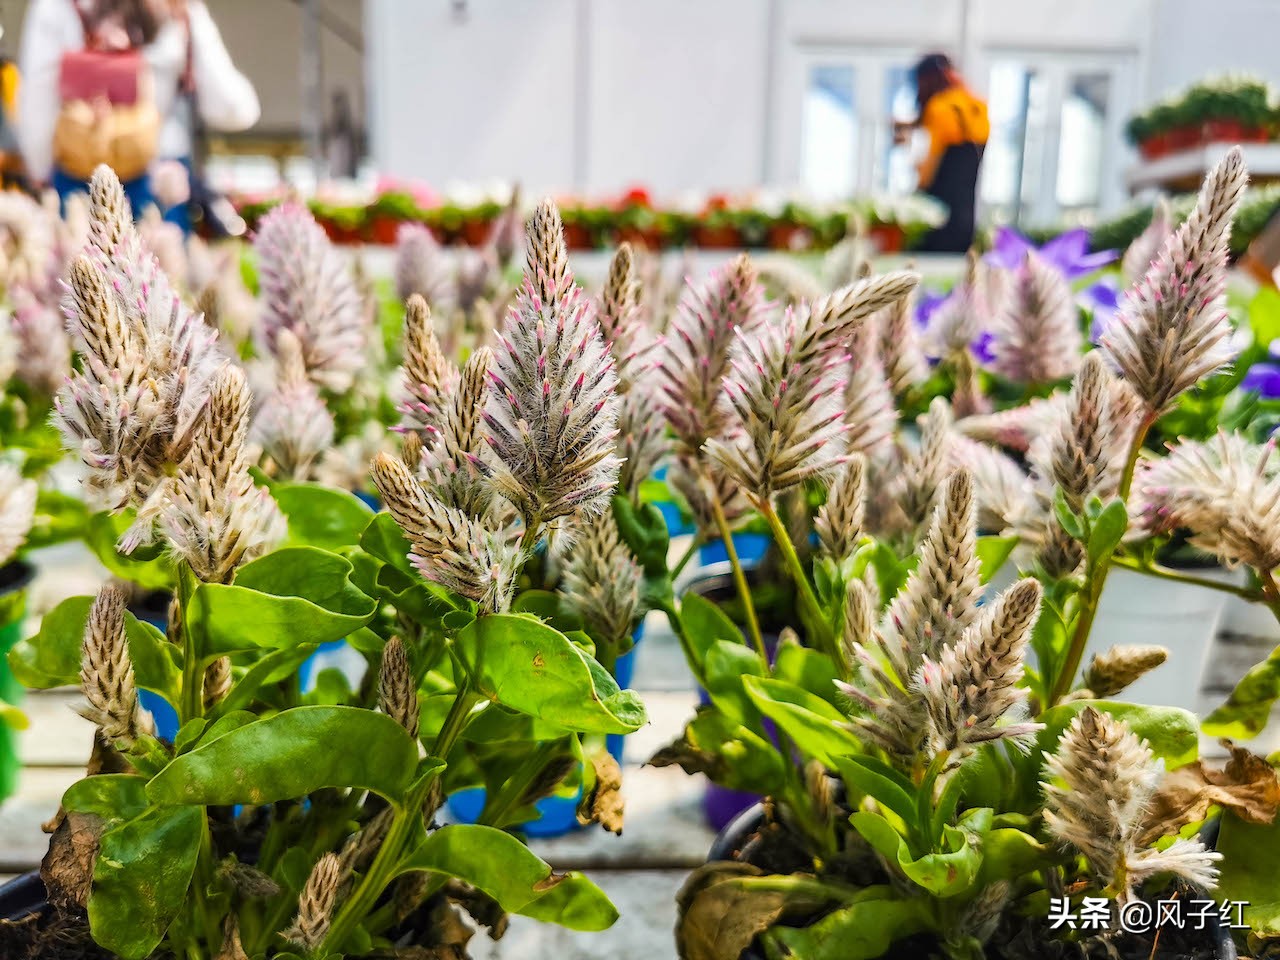 上海人都到浙江海宁这个花卉城买花了，因为价格便宜，物流快捷